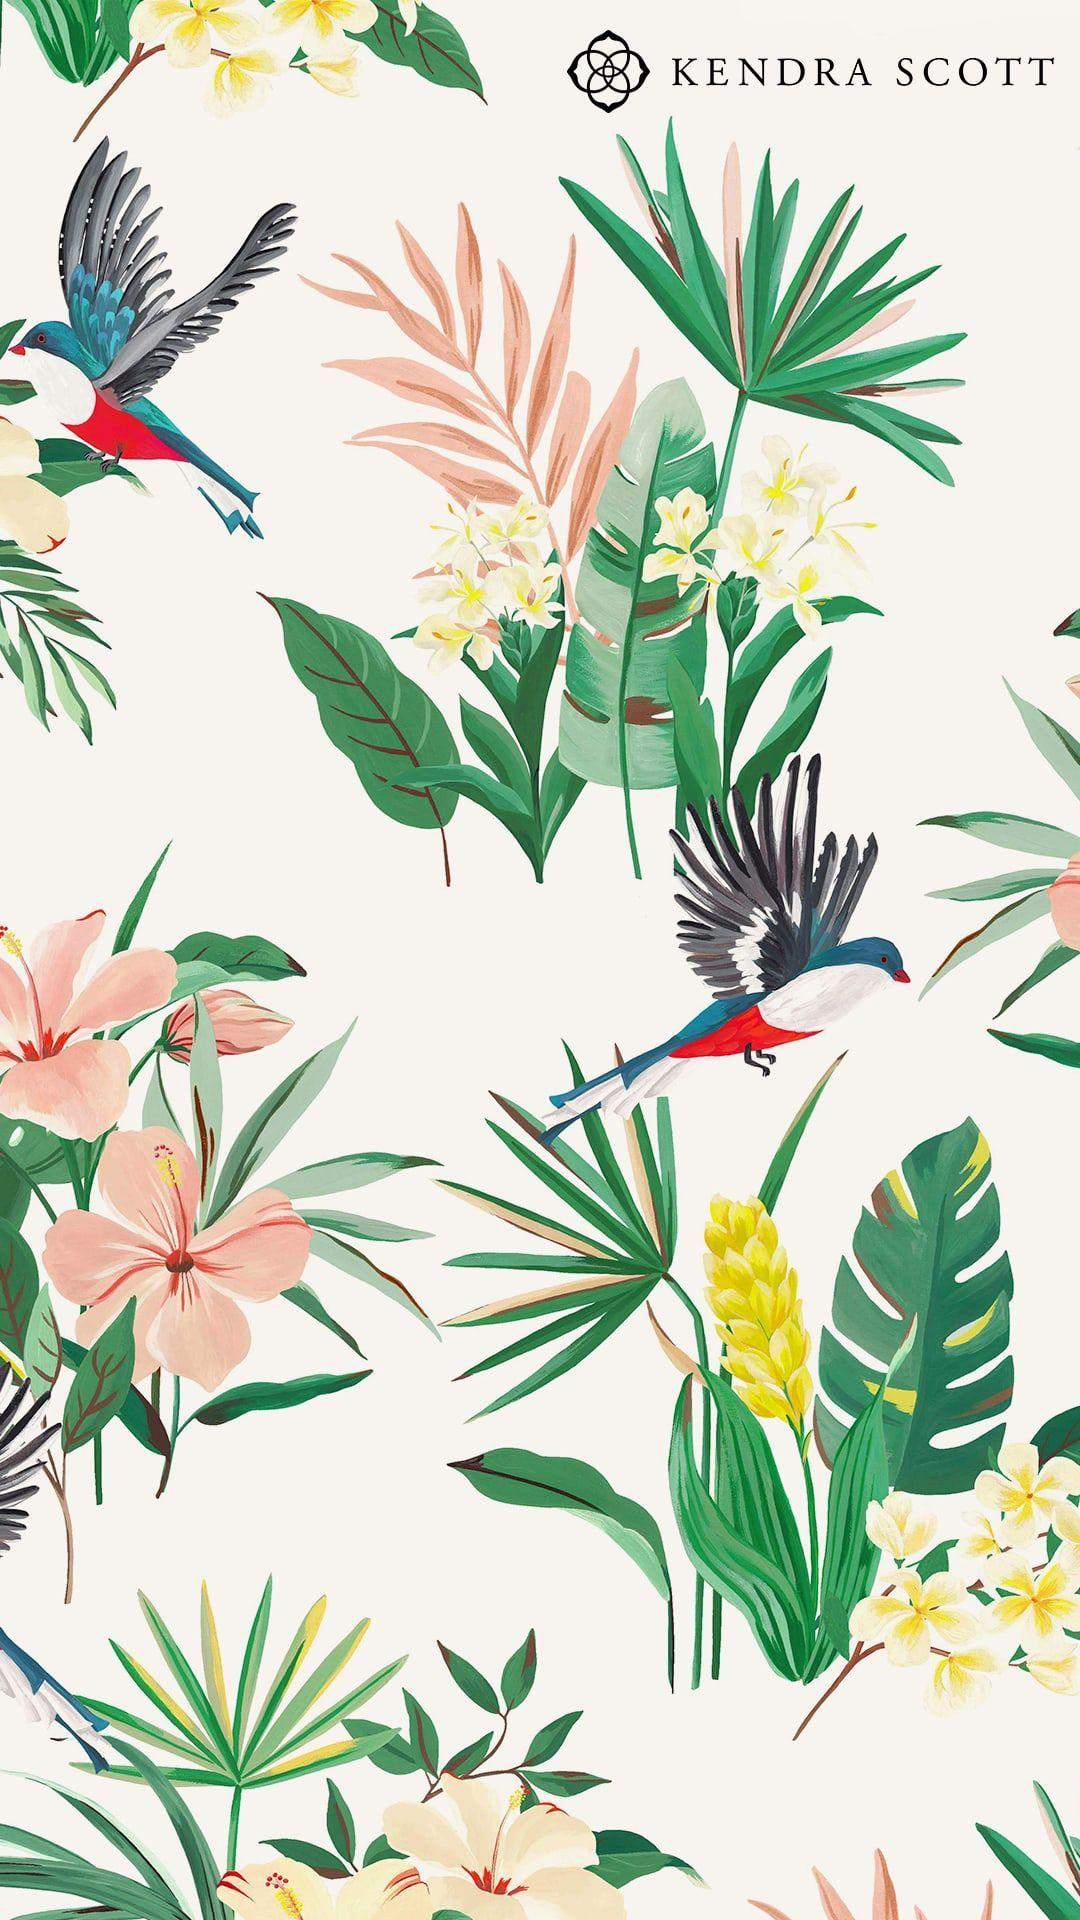 Kendra Scott Summer 2018 Wallpaper. Plant wallpaper, Prints